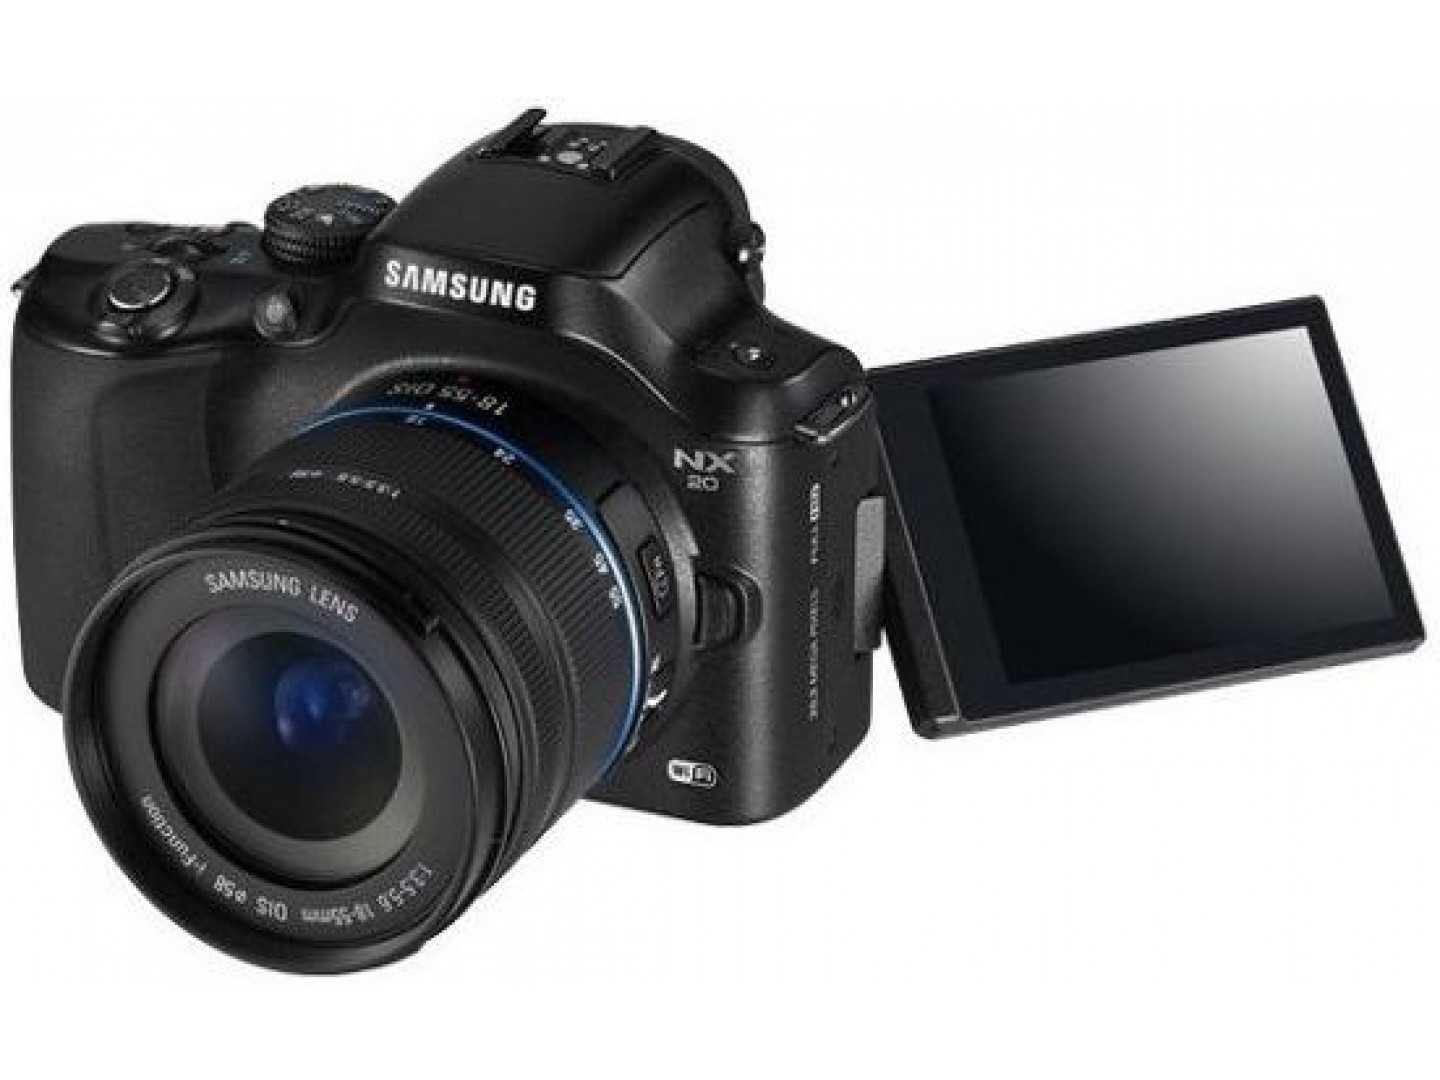 Samsung galaxy nx kit - купить , скидки, цена, отзывы, обзор, характеристики - фотоаппараты цифровые